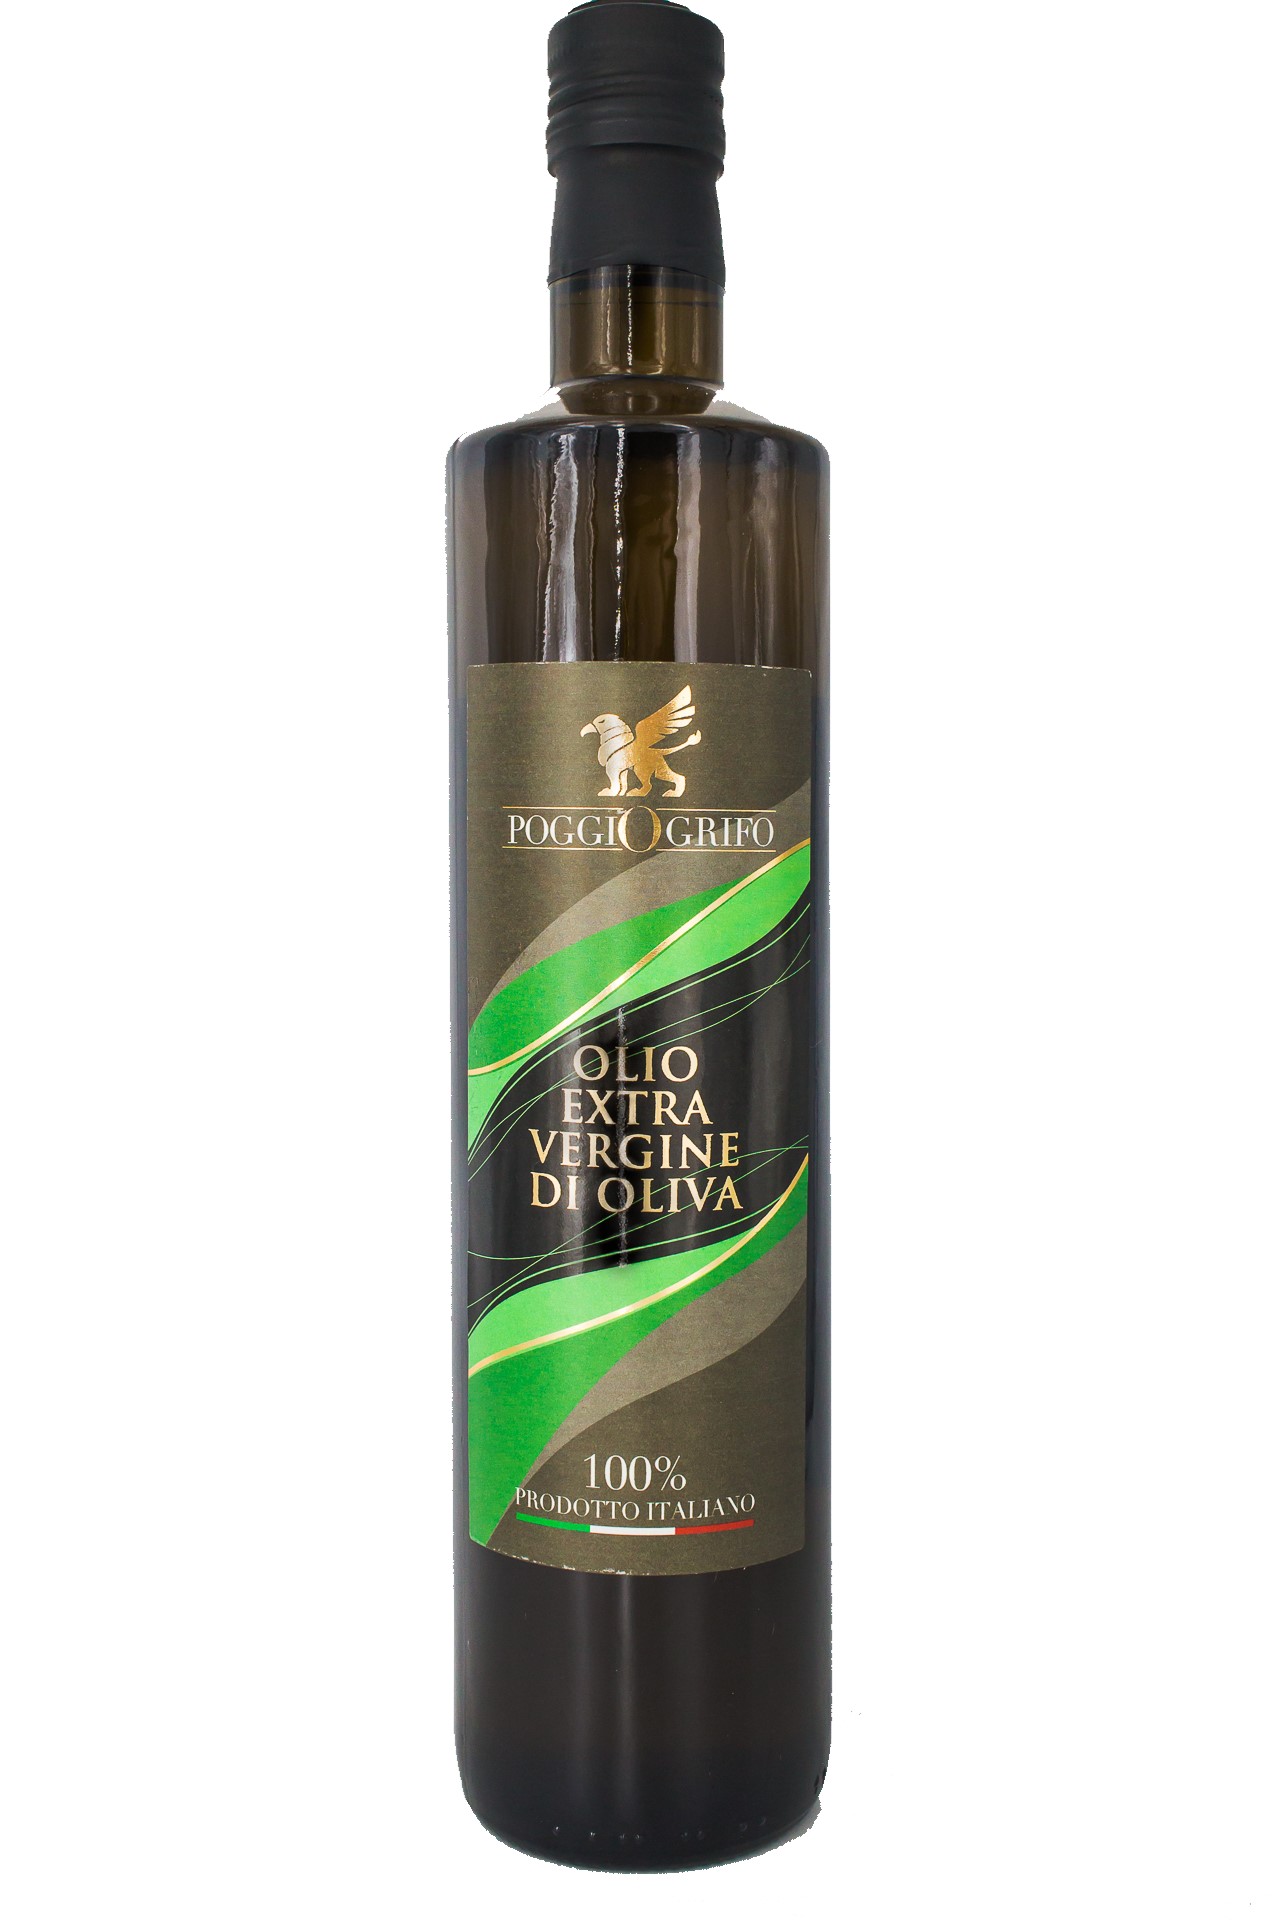 Olio extra vergine di oliva 100% ITALIANO "Delicato Fascia Verde" 0,75 litri x 6 bottiglie